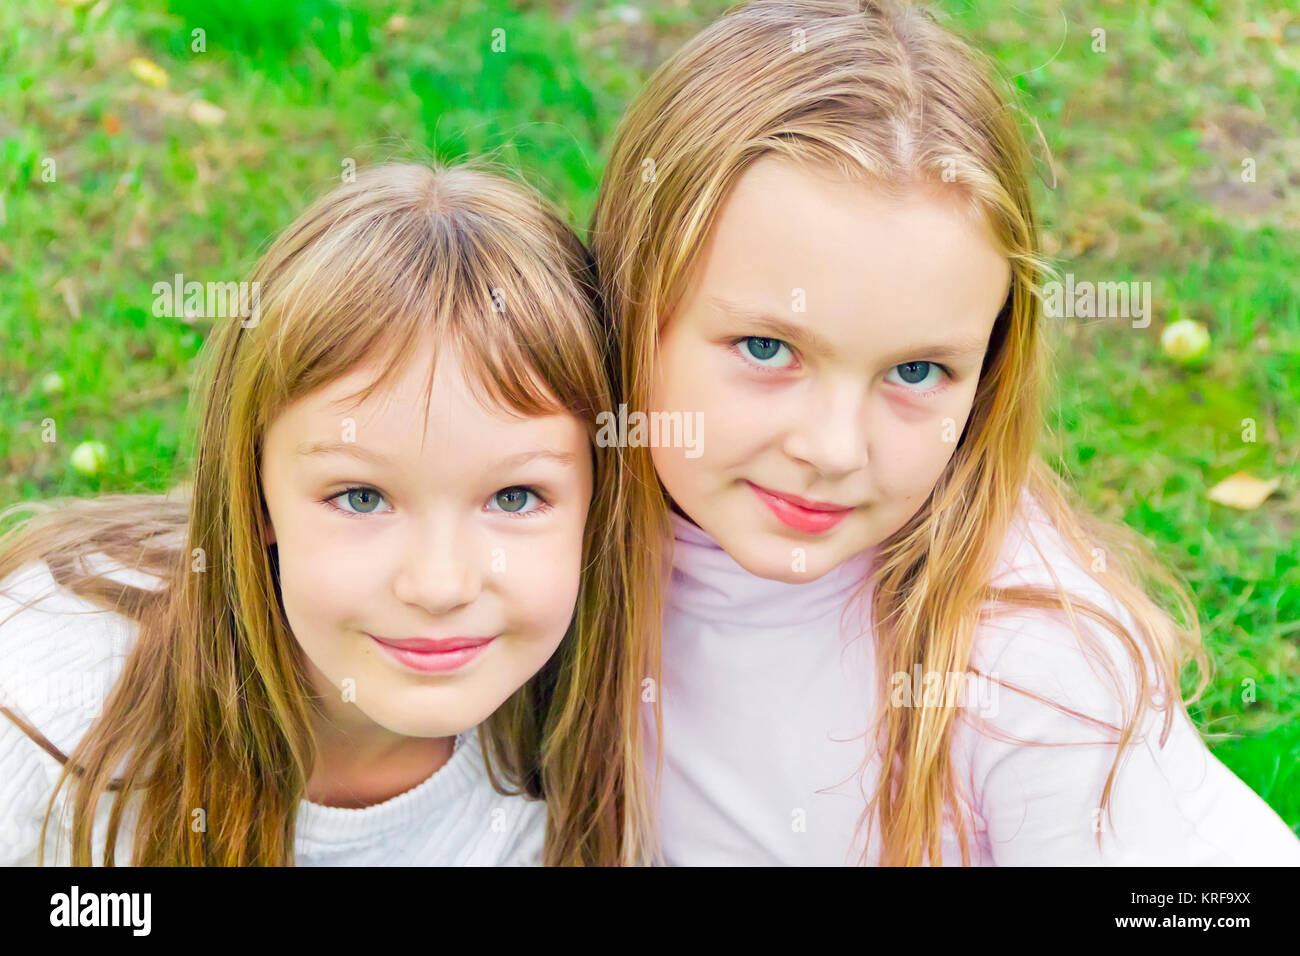 Foto von zwei süßen Mädels mit langen Haaren Stockfoto